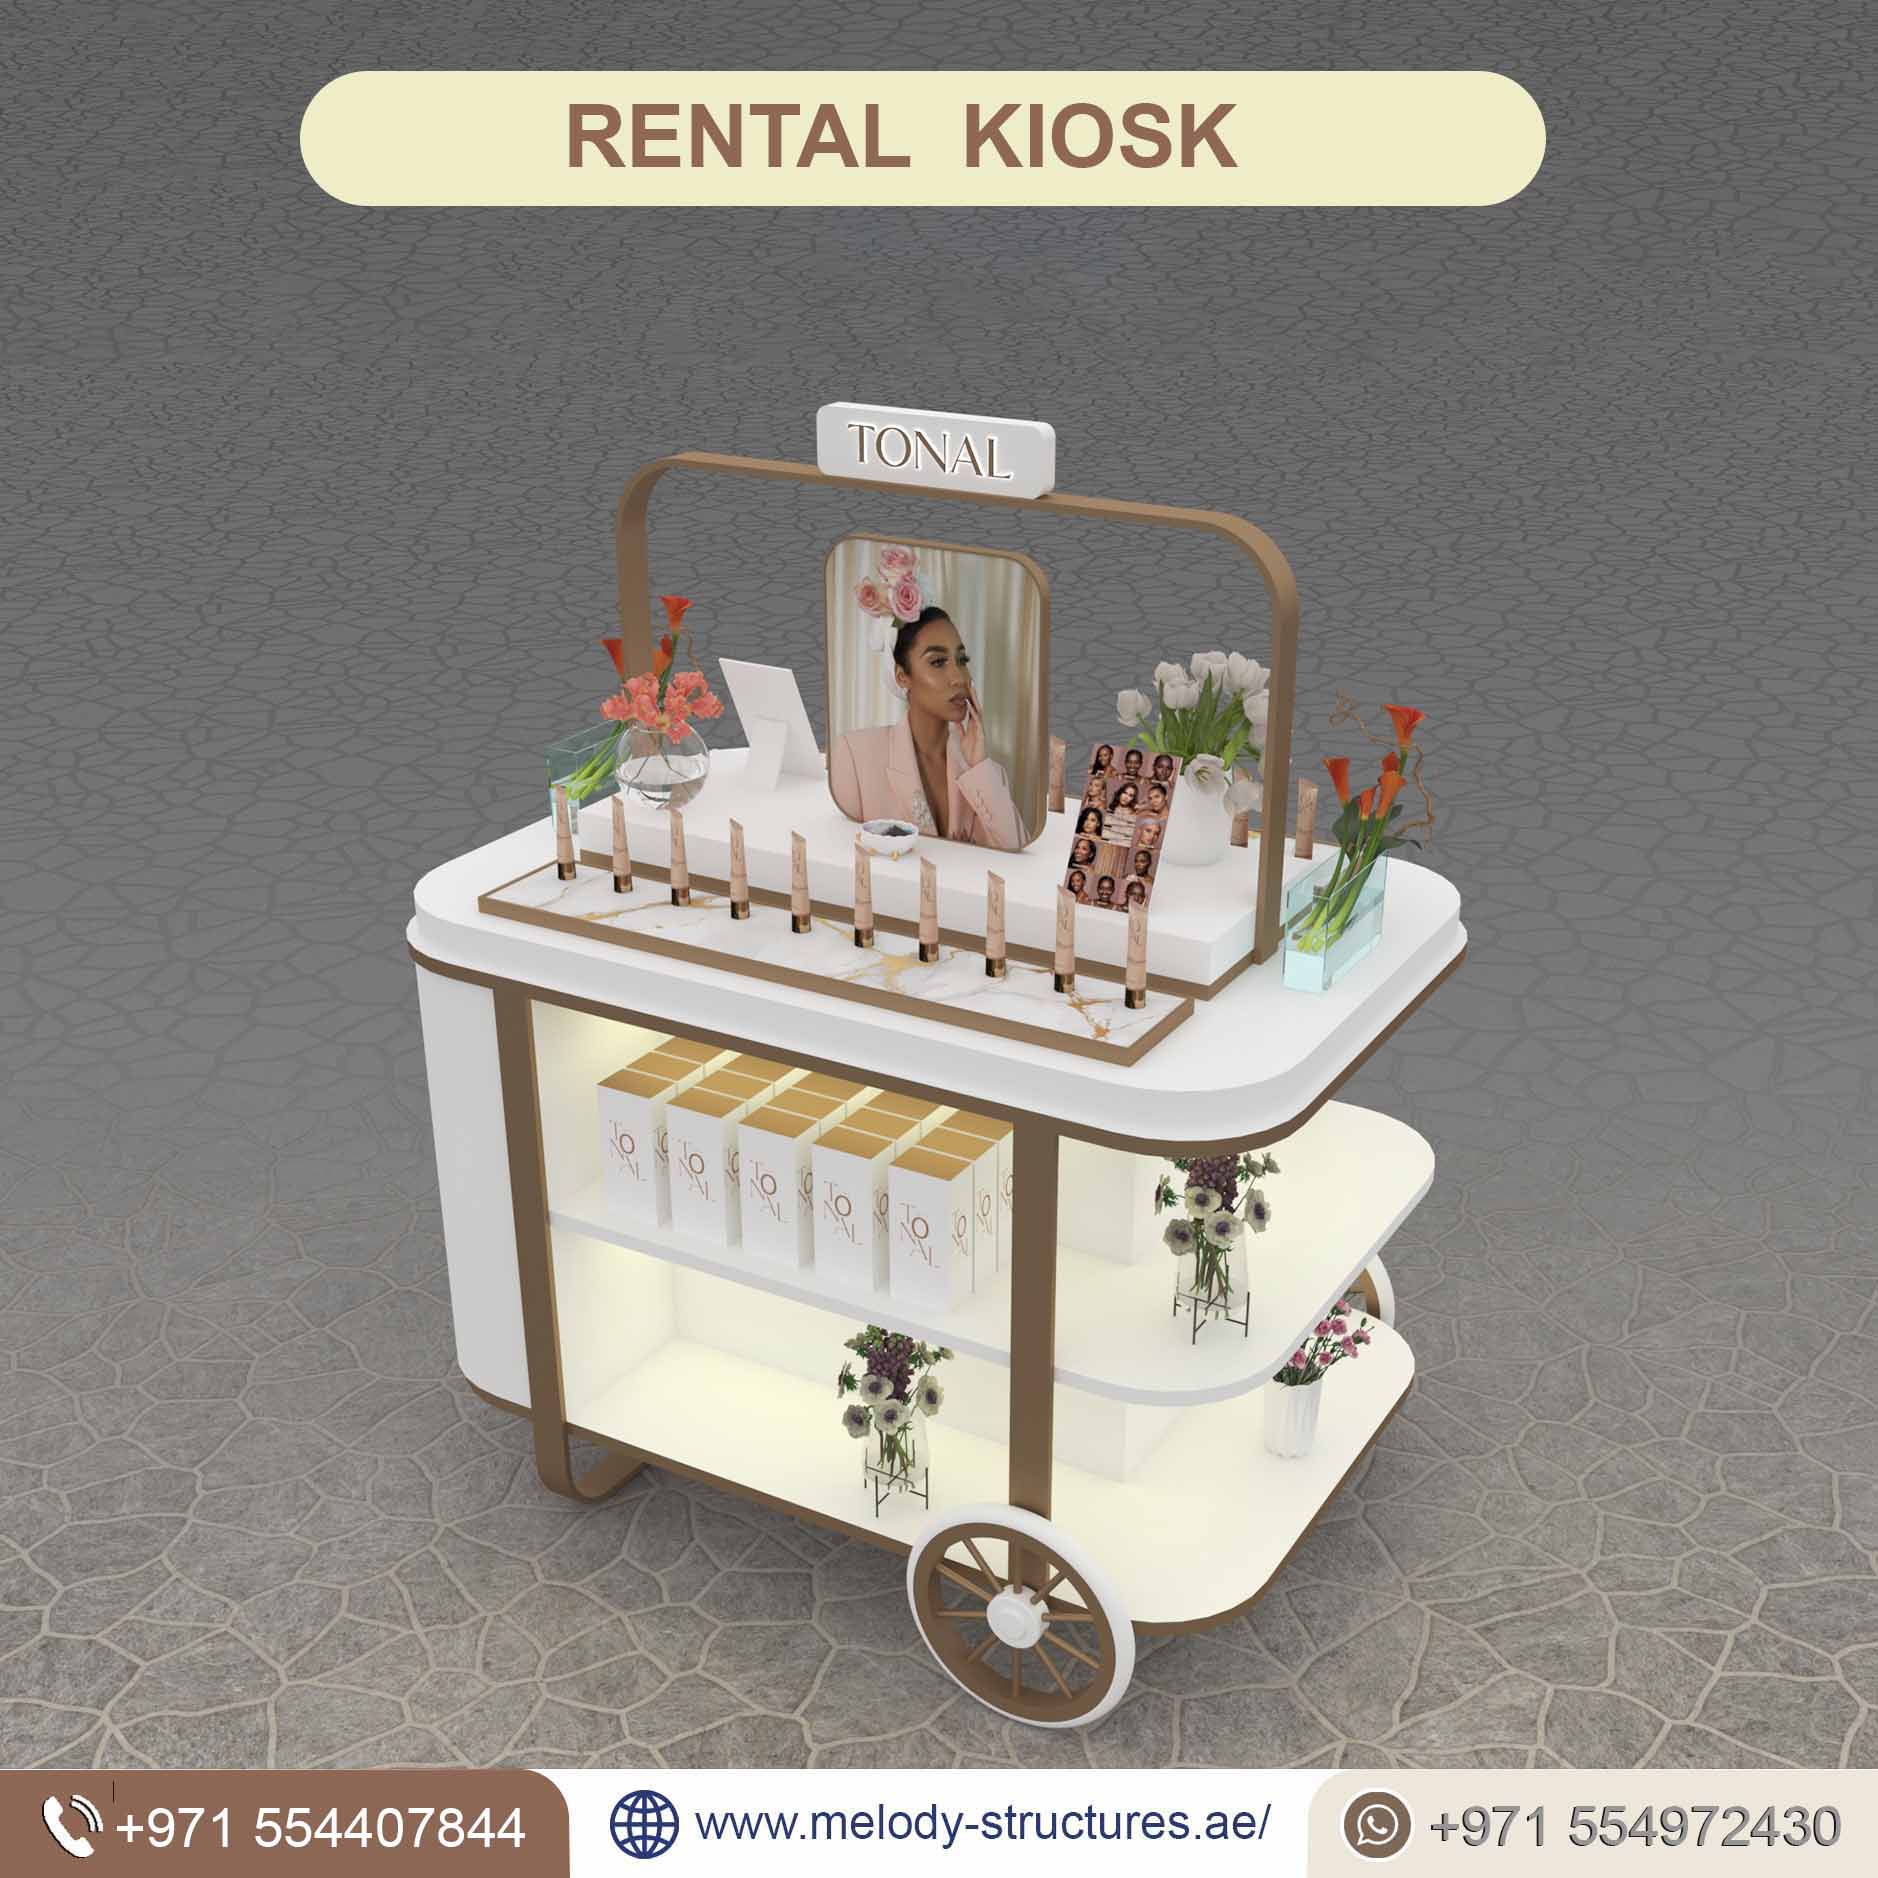 Rental Kiosk Company in UAE, Rental Kiosk For Events (2).jpg